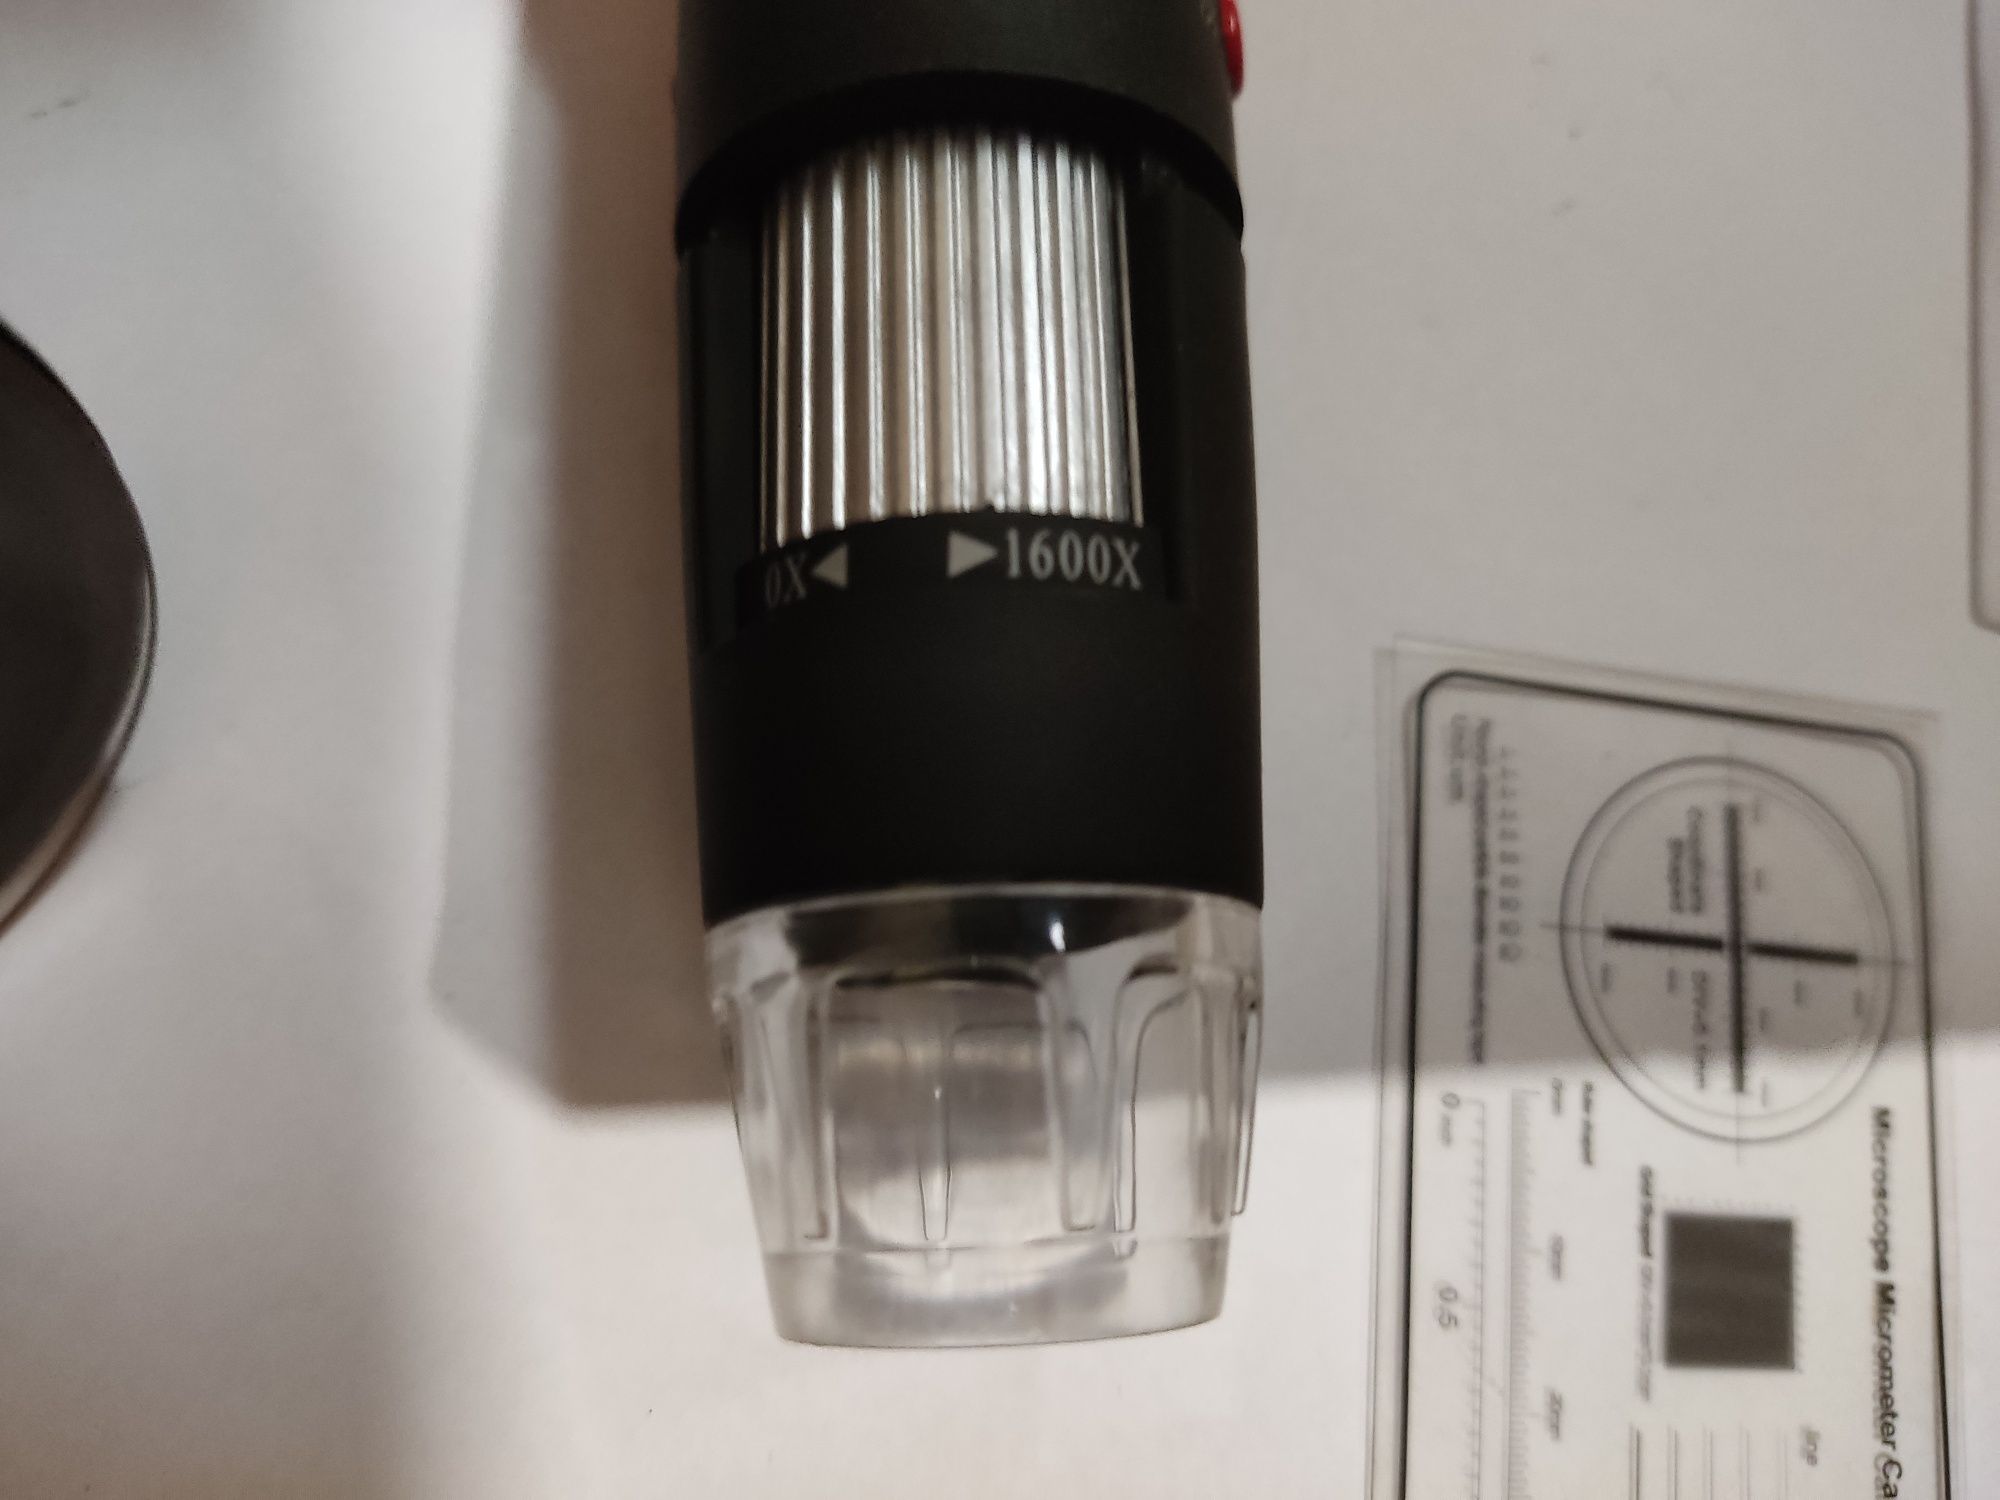 USB микроскоп электронный цифровой с увеличением 1600x